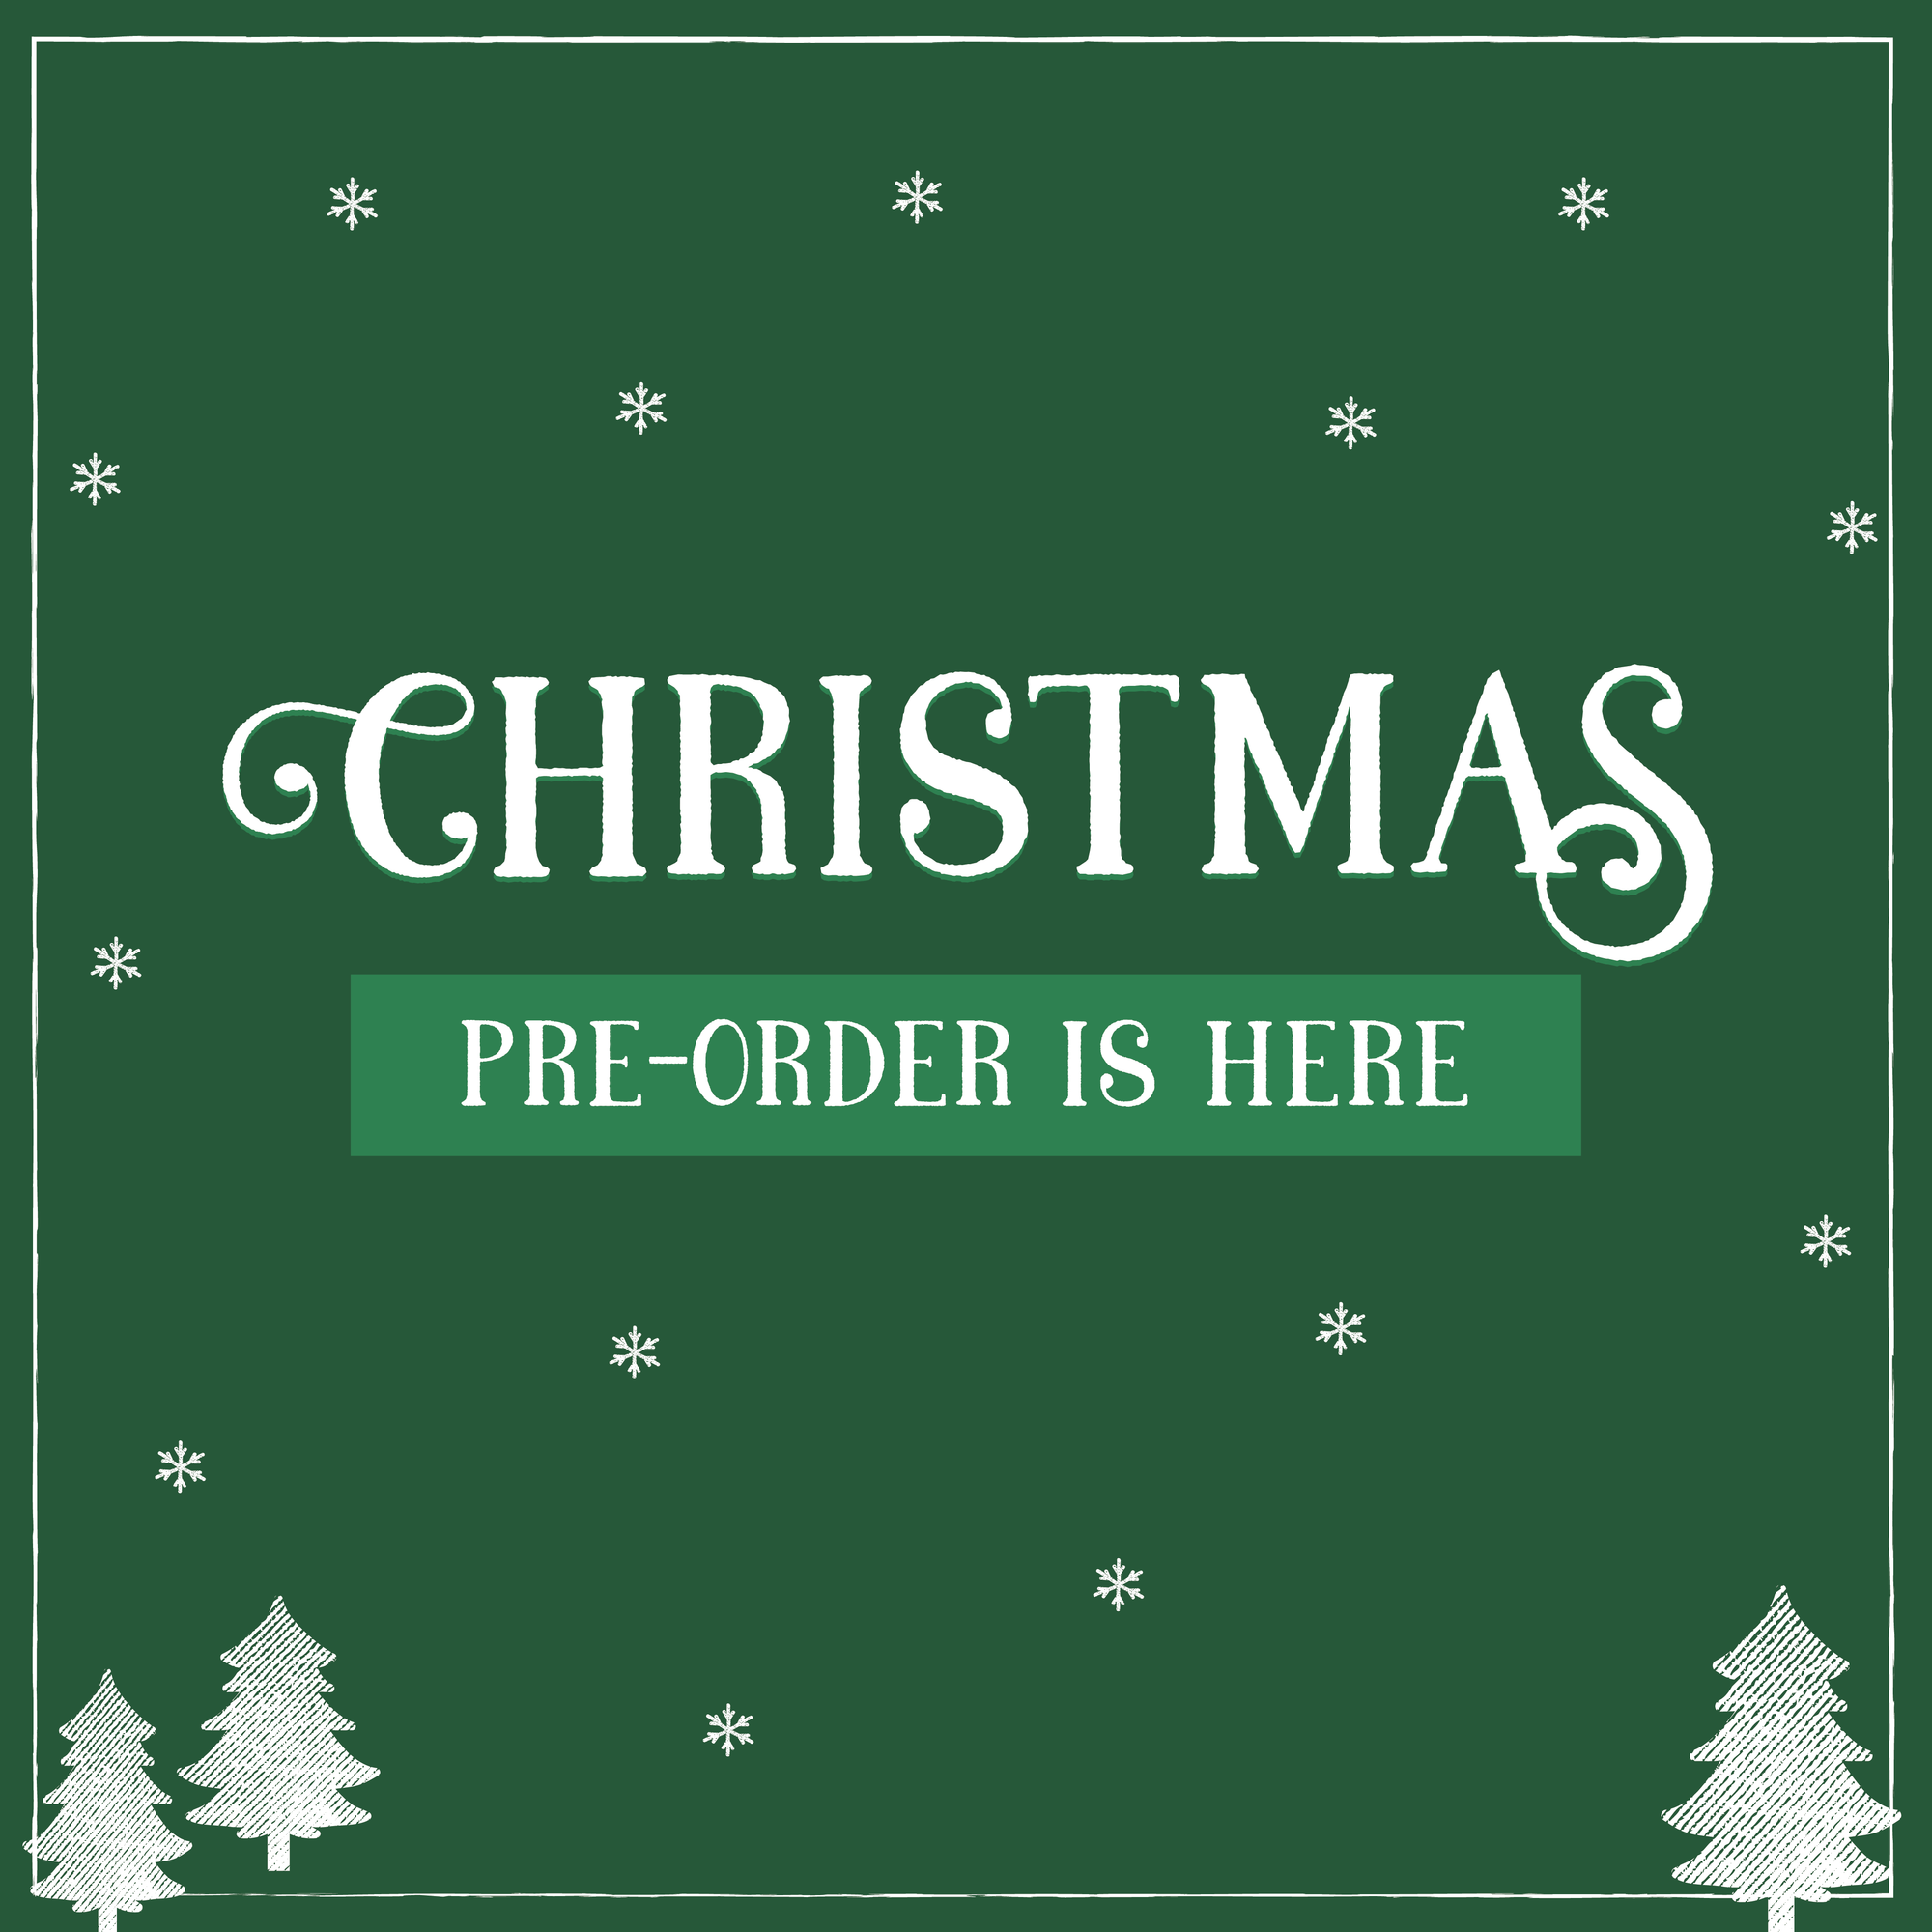 Ho Ho Ho, Christmas Pre-Order is Coming!